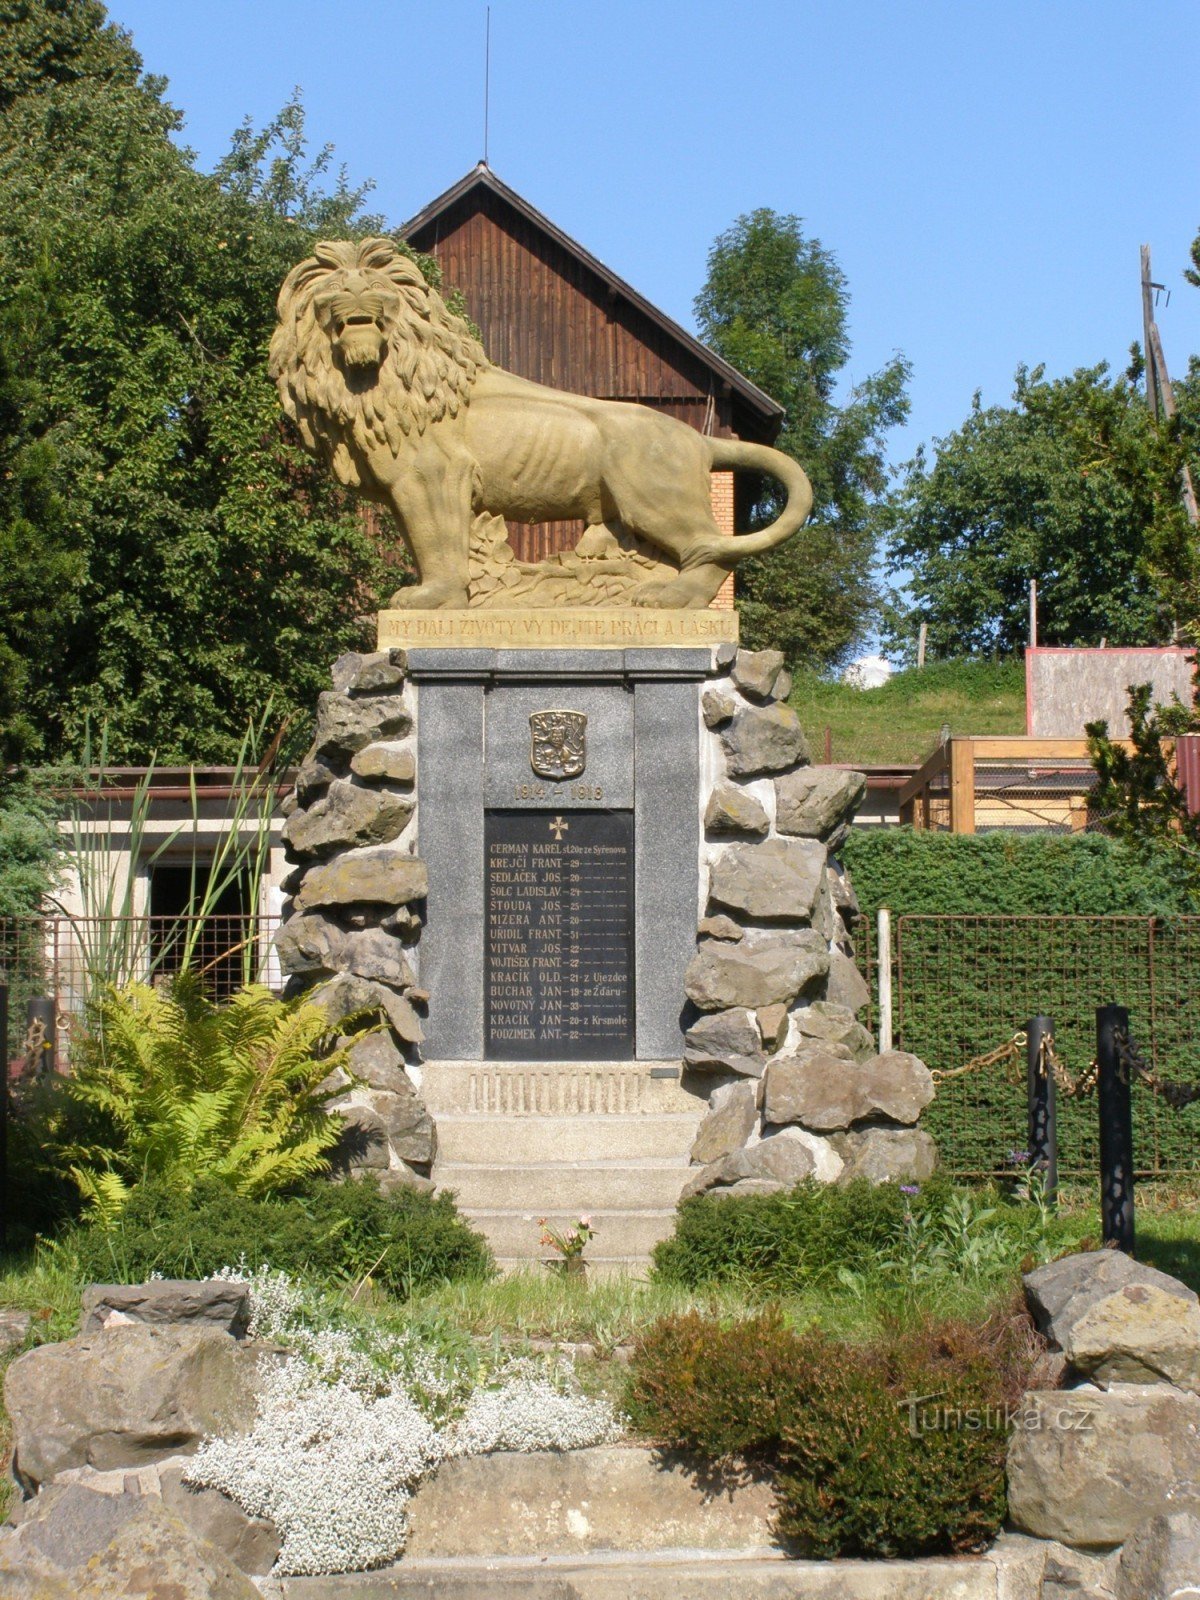 Syřenov - emlékmű az 1. sz. háború